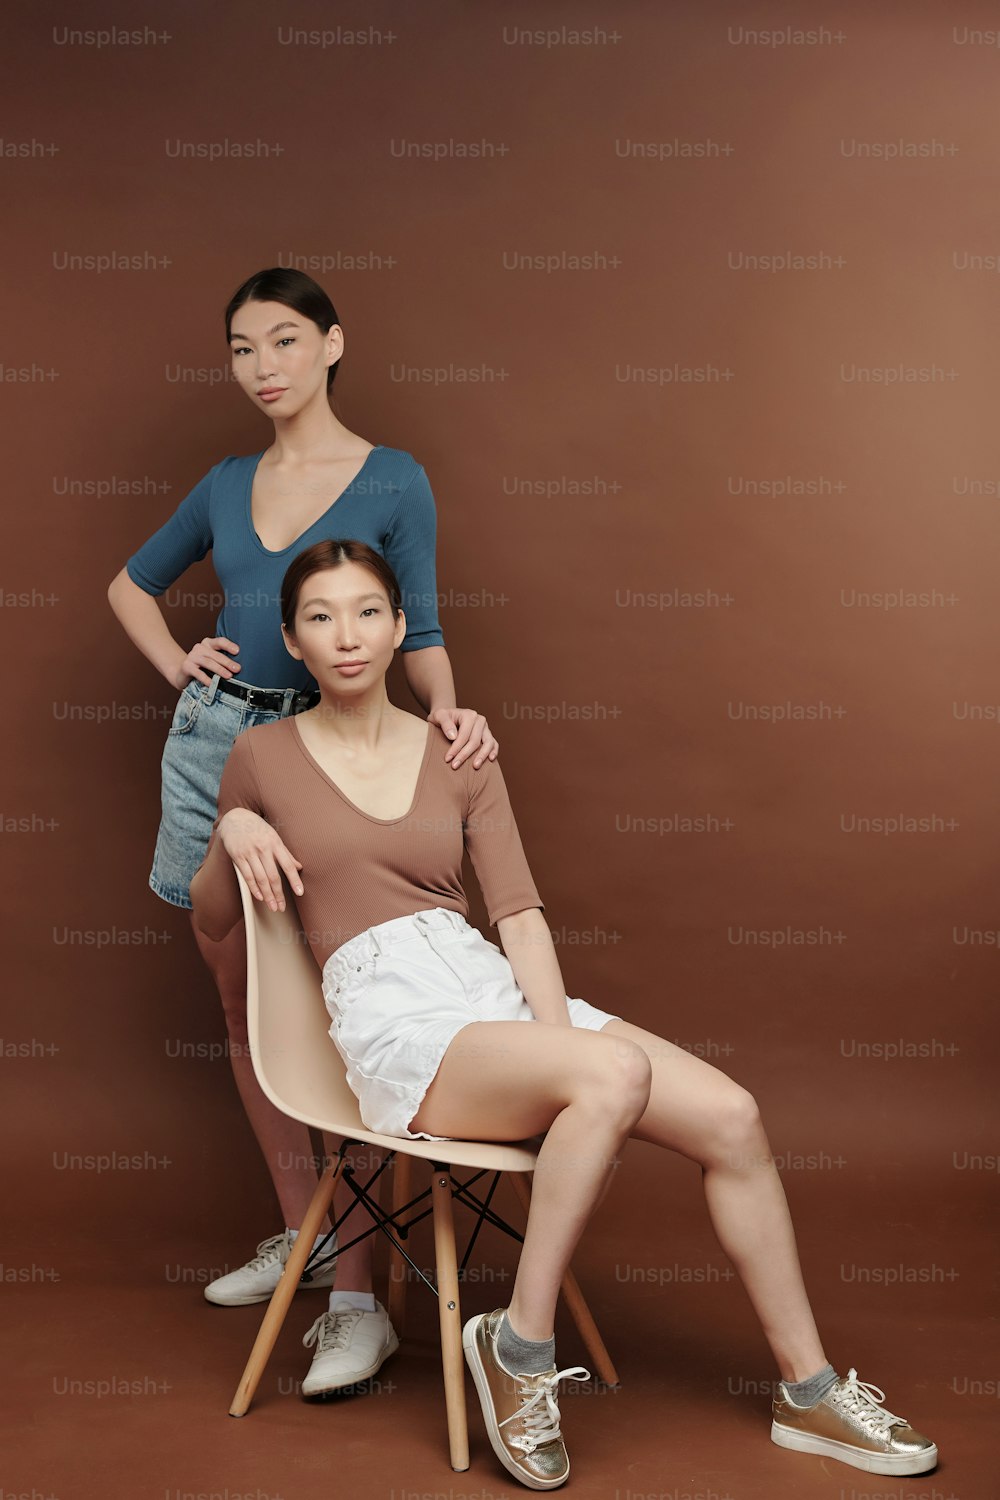 캐주얼웨어를 입은 젊은 진지한 갈색 머리 여성 쌍둥이가 갈색 벽이 있는 스튜디오의 흰색 플라스틱 의자에 앉아 있는 동안 당신을 바라보고 있습니다